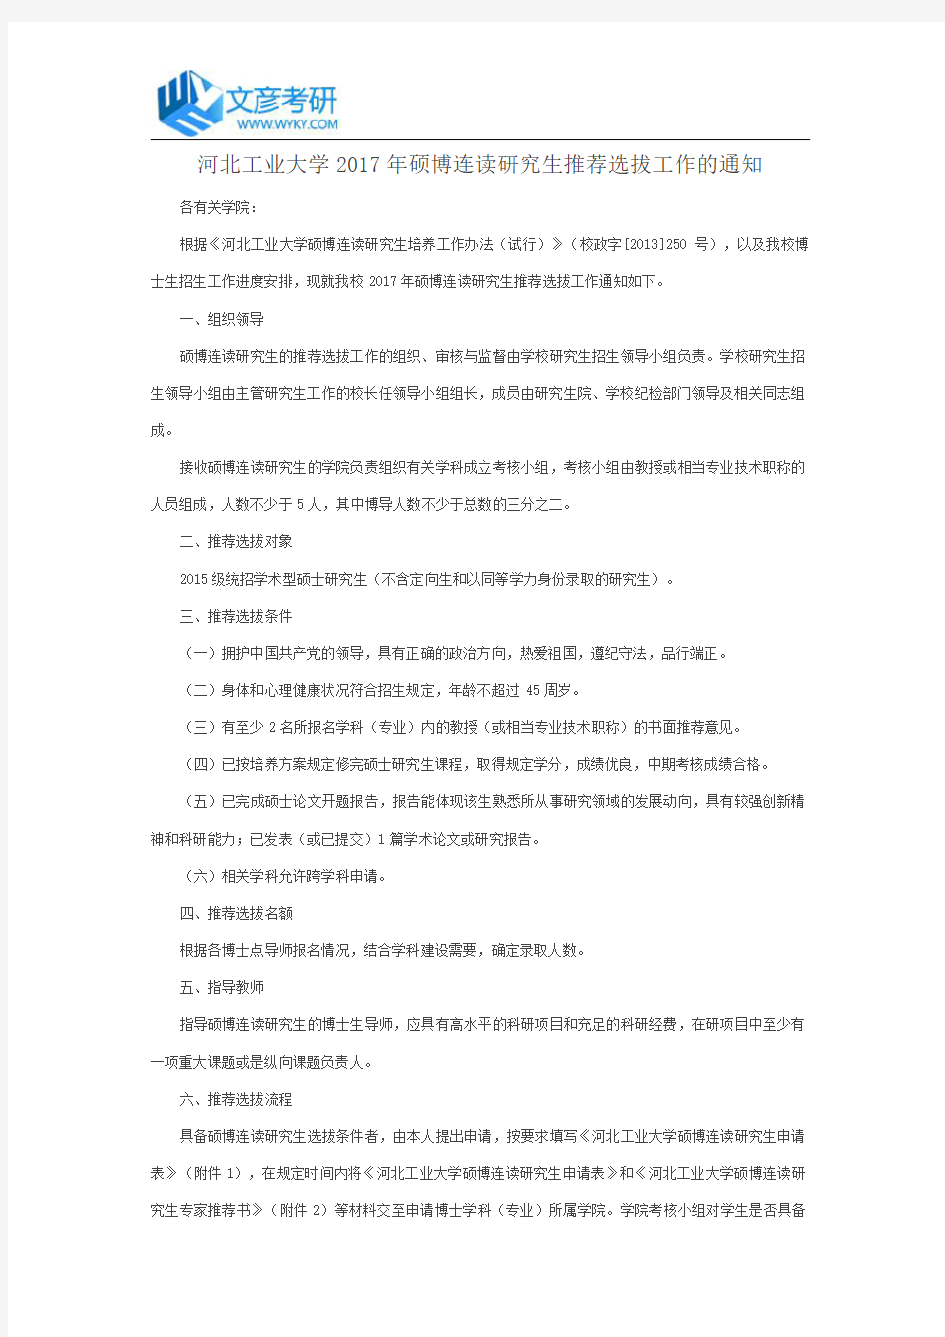 河北工业大学2017年硕博连读研究生推荐选拔工作的通知